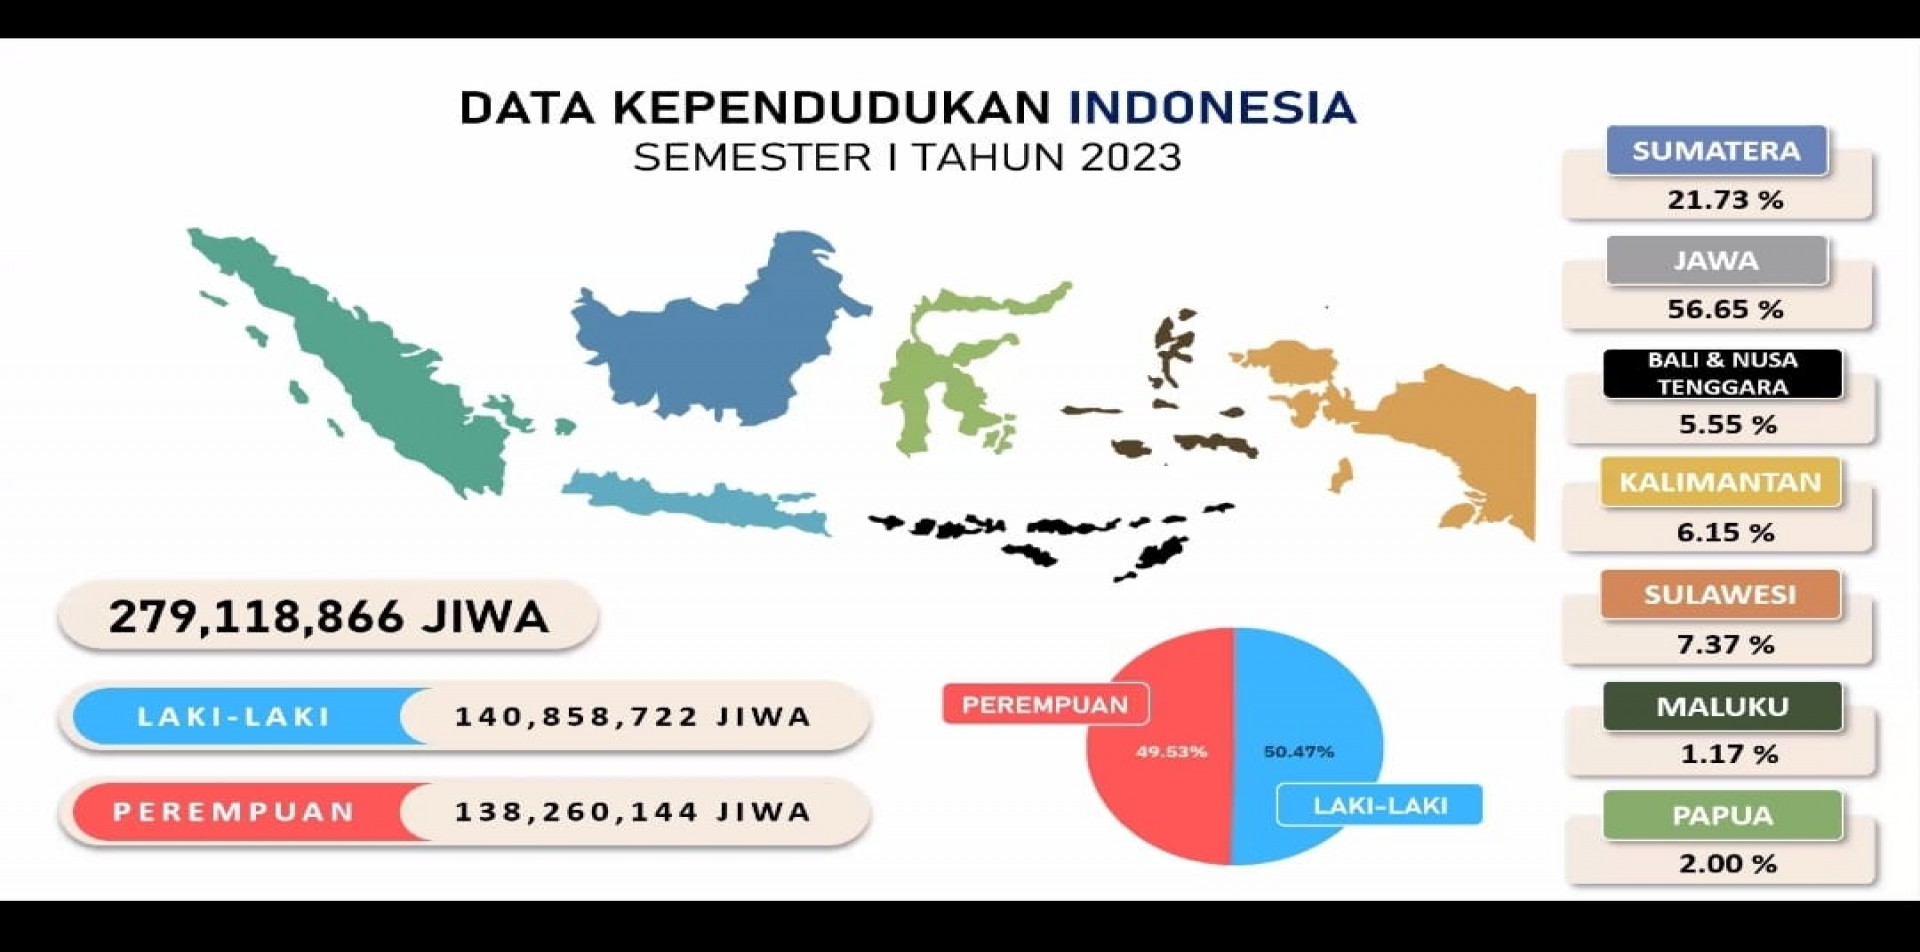 DATA KEPENDUDUKAN INDONESIA SEMESTER I TAHUN 2023